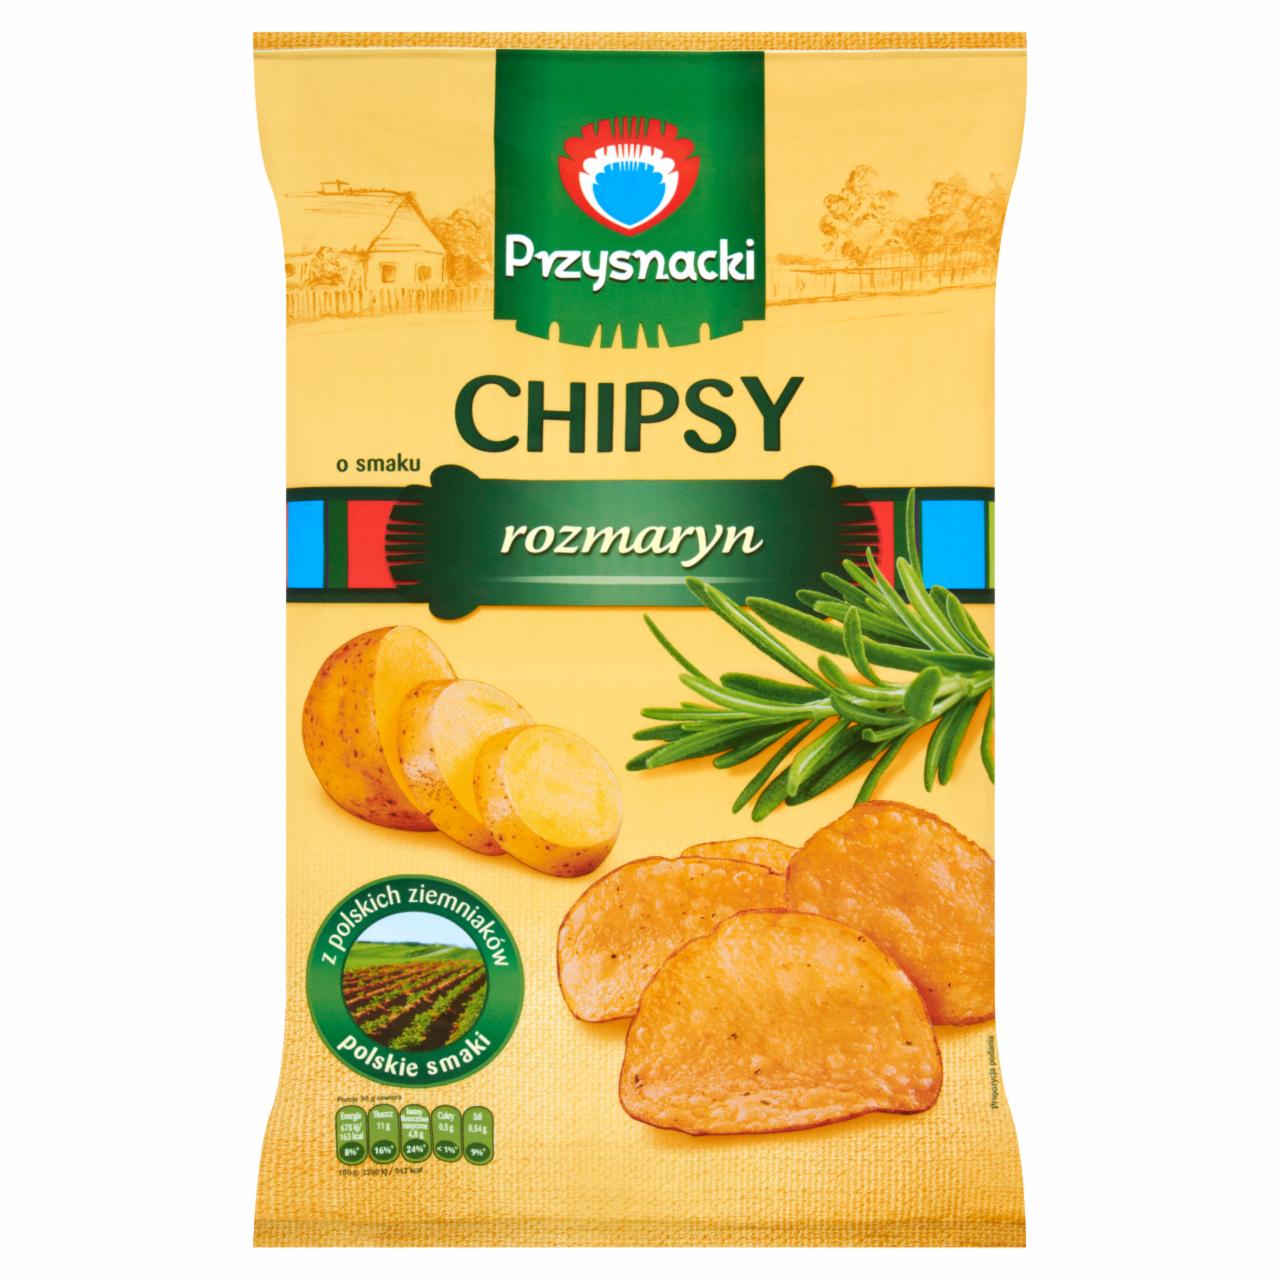 Zdjęcia - Przysnacki Chipsy o smaku rozmaryn 135 g